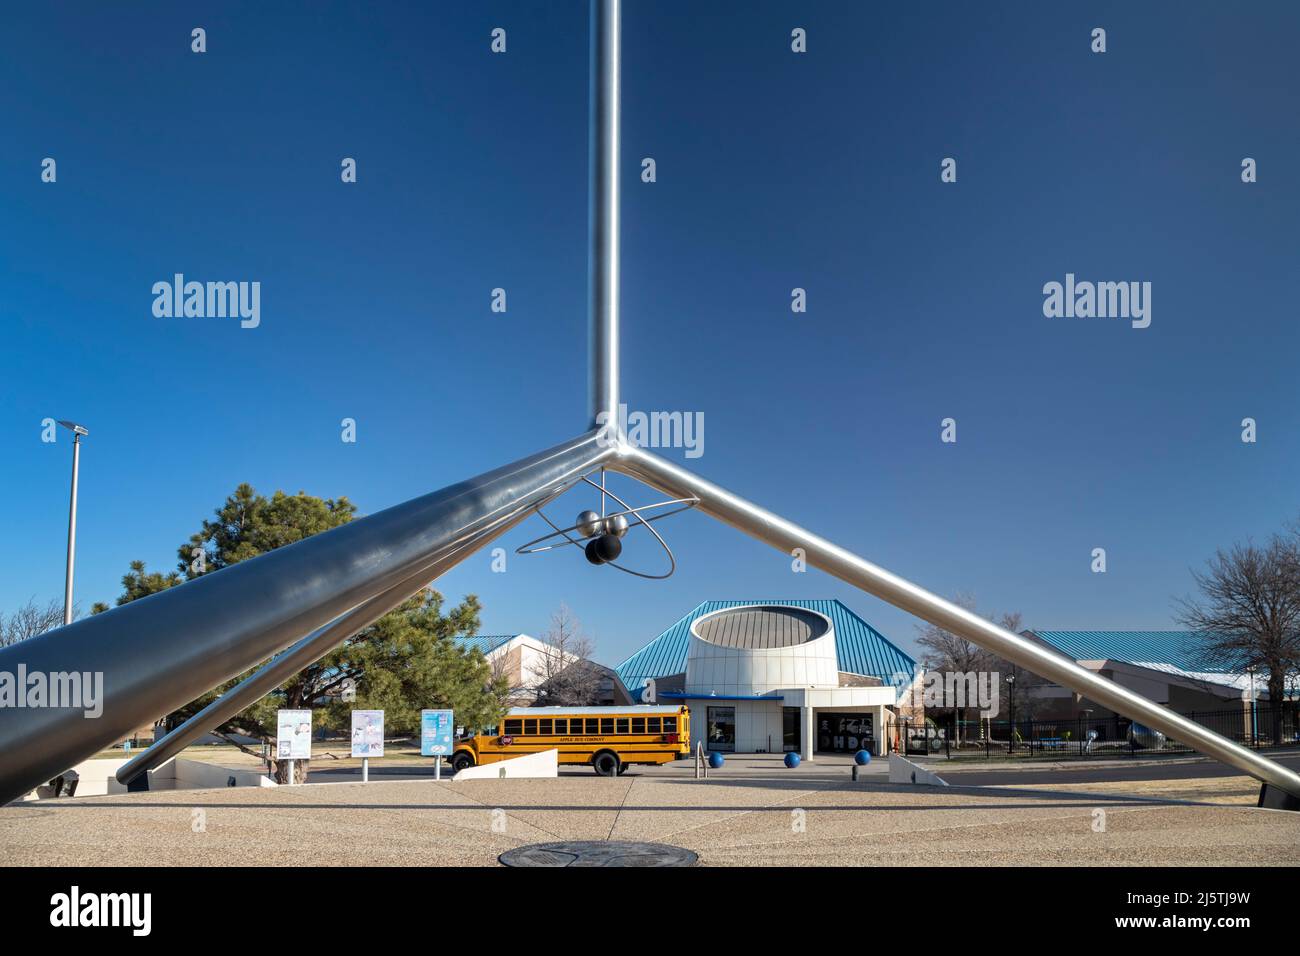 Amarillo, Texas - das Helium Monument vor dem Don Harrington Discovery Center. Amarillo war für die meisten von das Zentrum der weltweiten Heliumproduktion Stockfoto